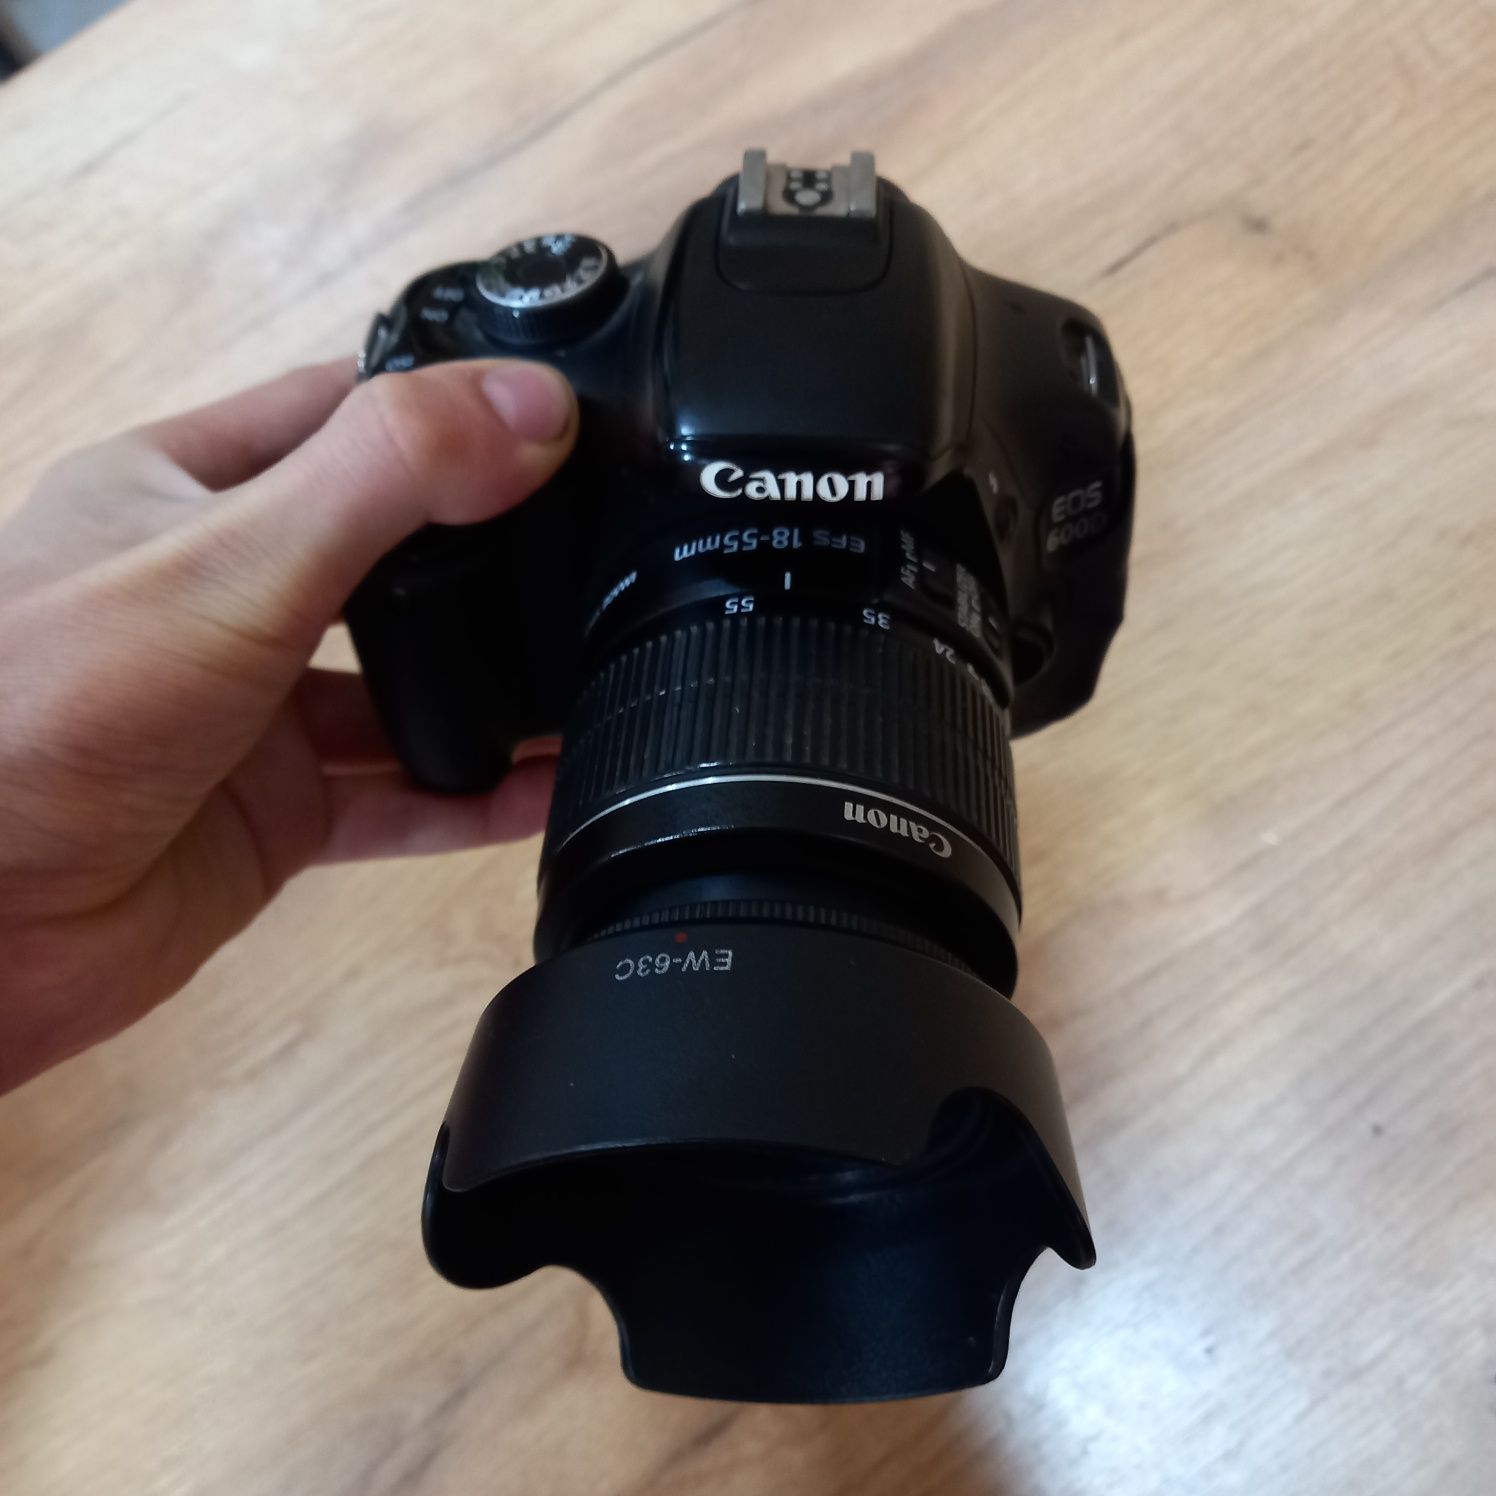 Canon EOS 600D Kamera